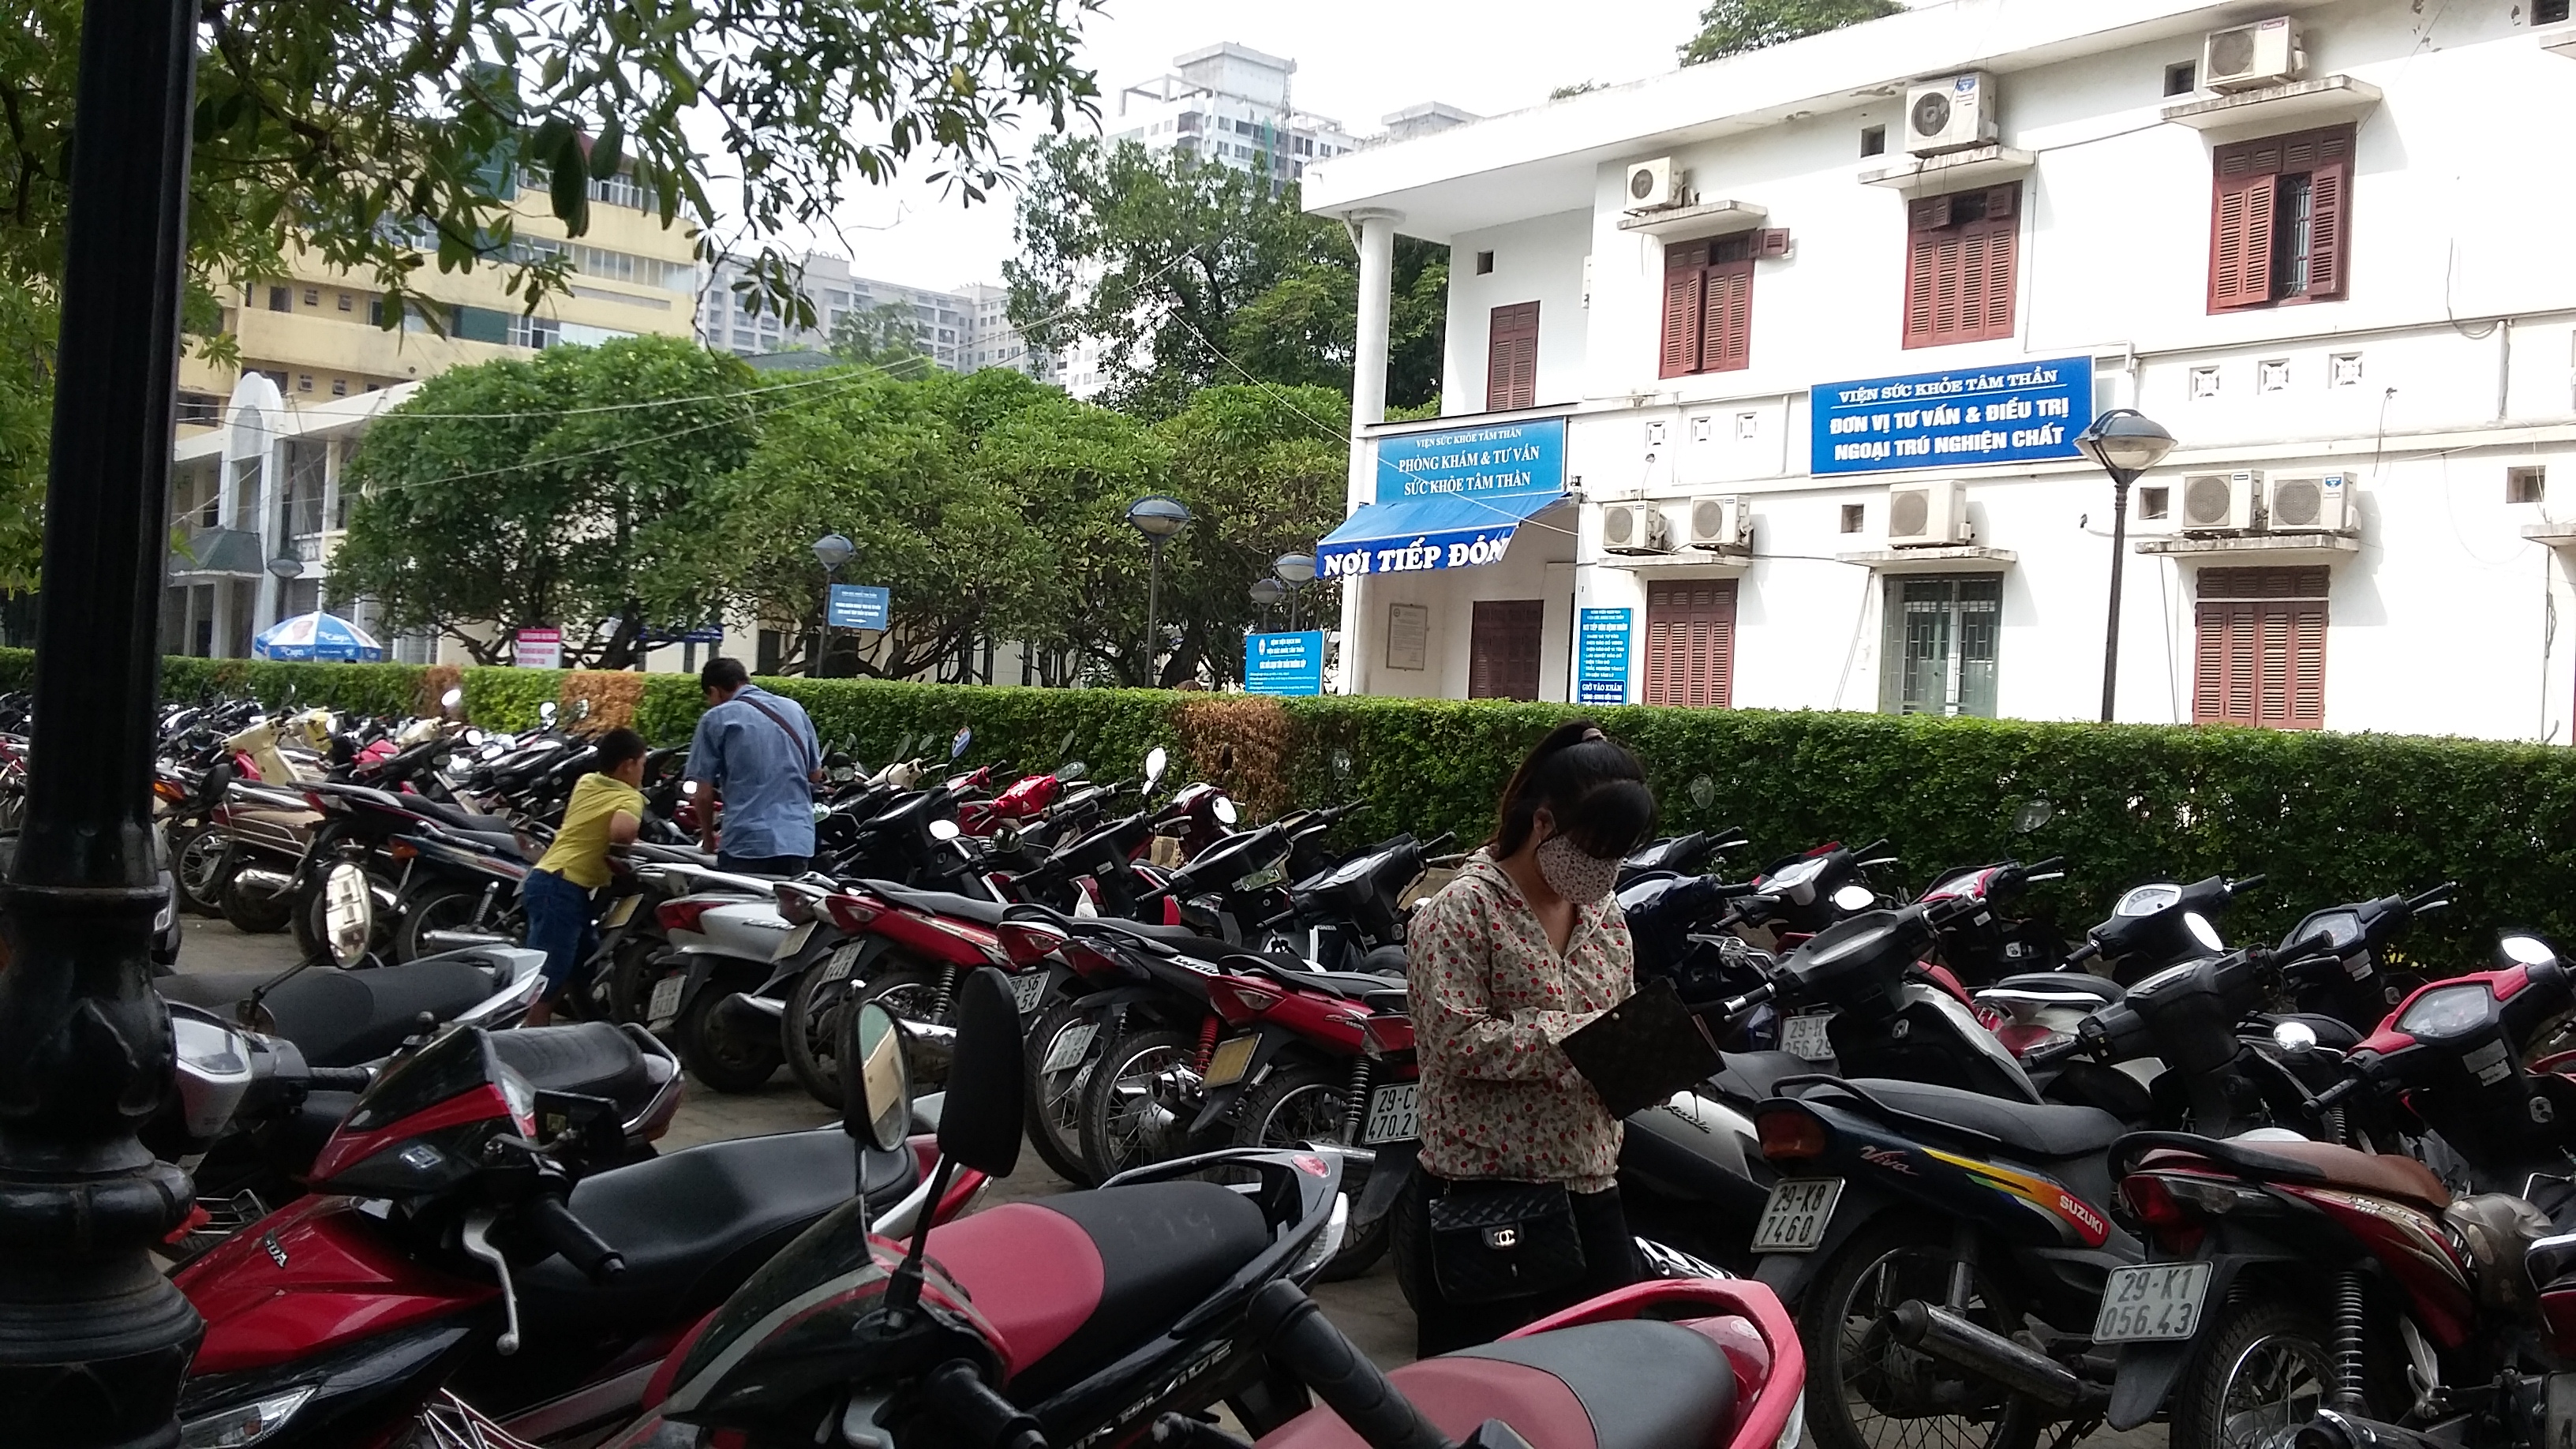 Bãi gửi xe trong khuôn viên Bệnh viện Bạch Mai hiện luôn trong tình trạng quá tải